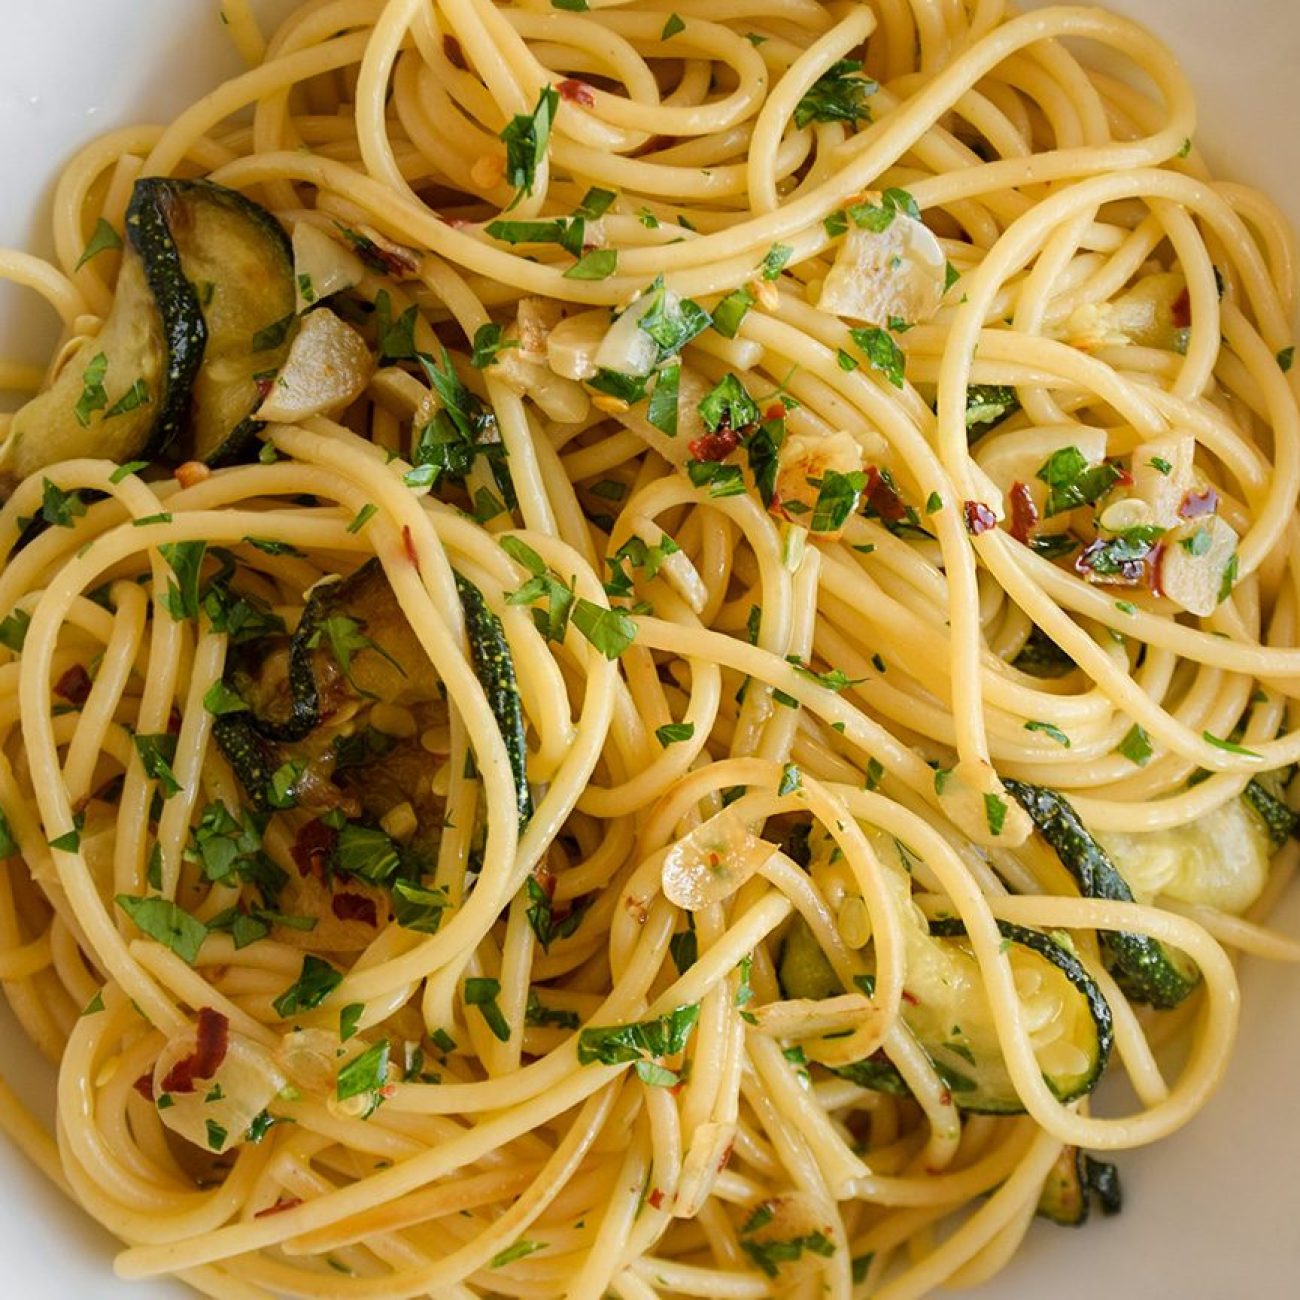 Aglio E Olio Spaghetti With Garlic And Olive